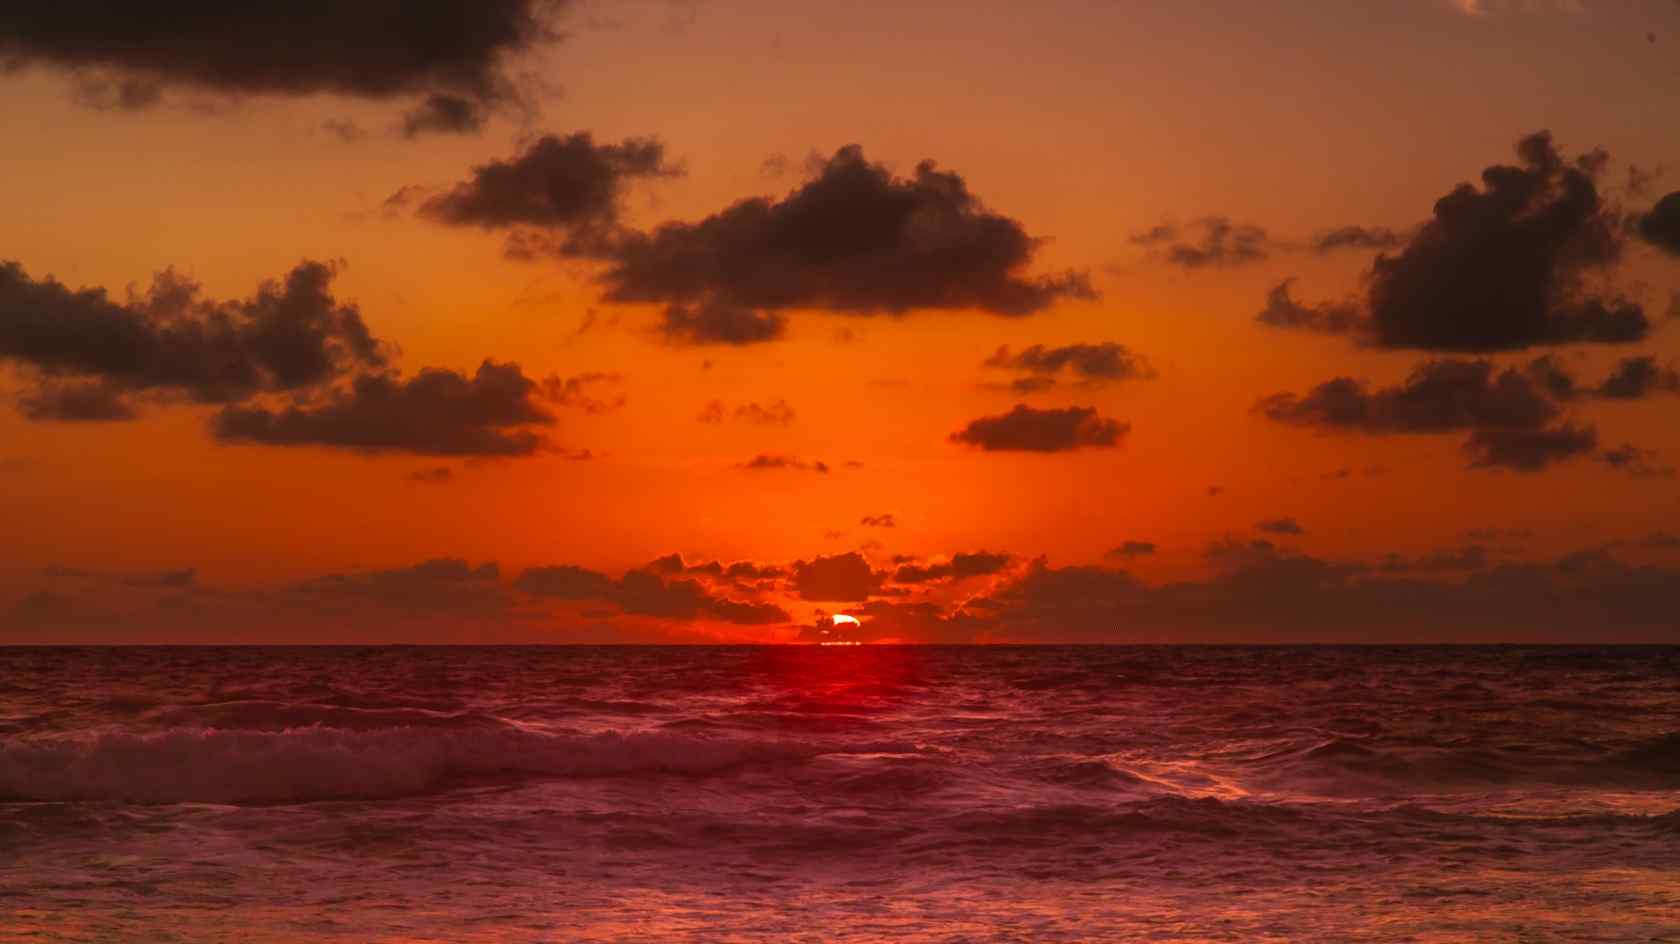 普吉岛唯美落日夕阳风景图片高清桌面壁纸